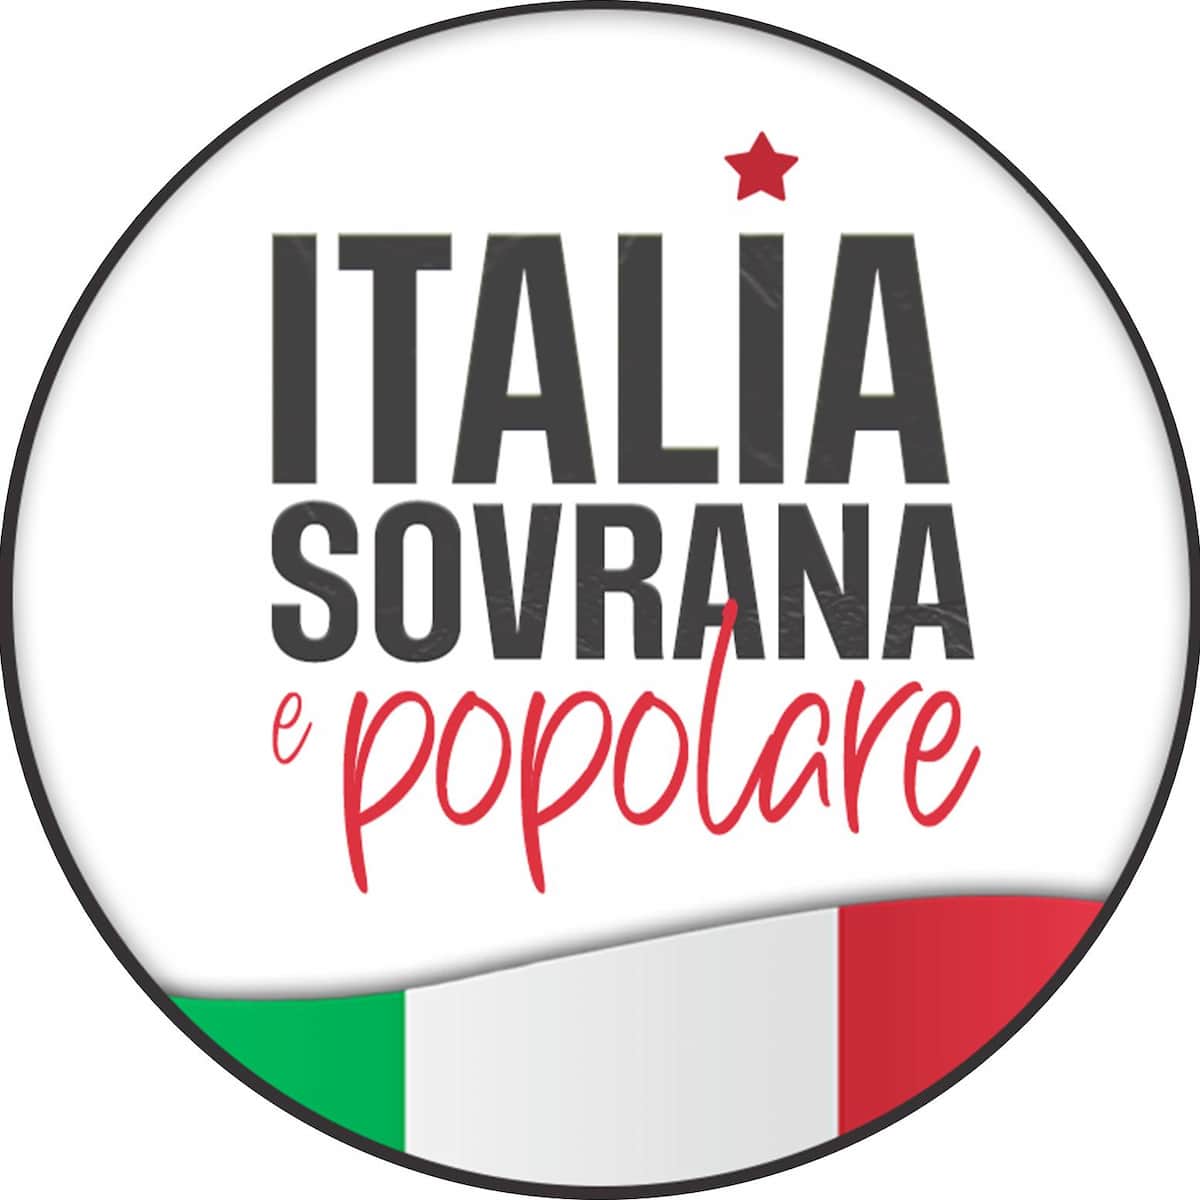 Italia sovrana popolare